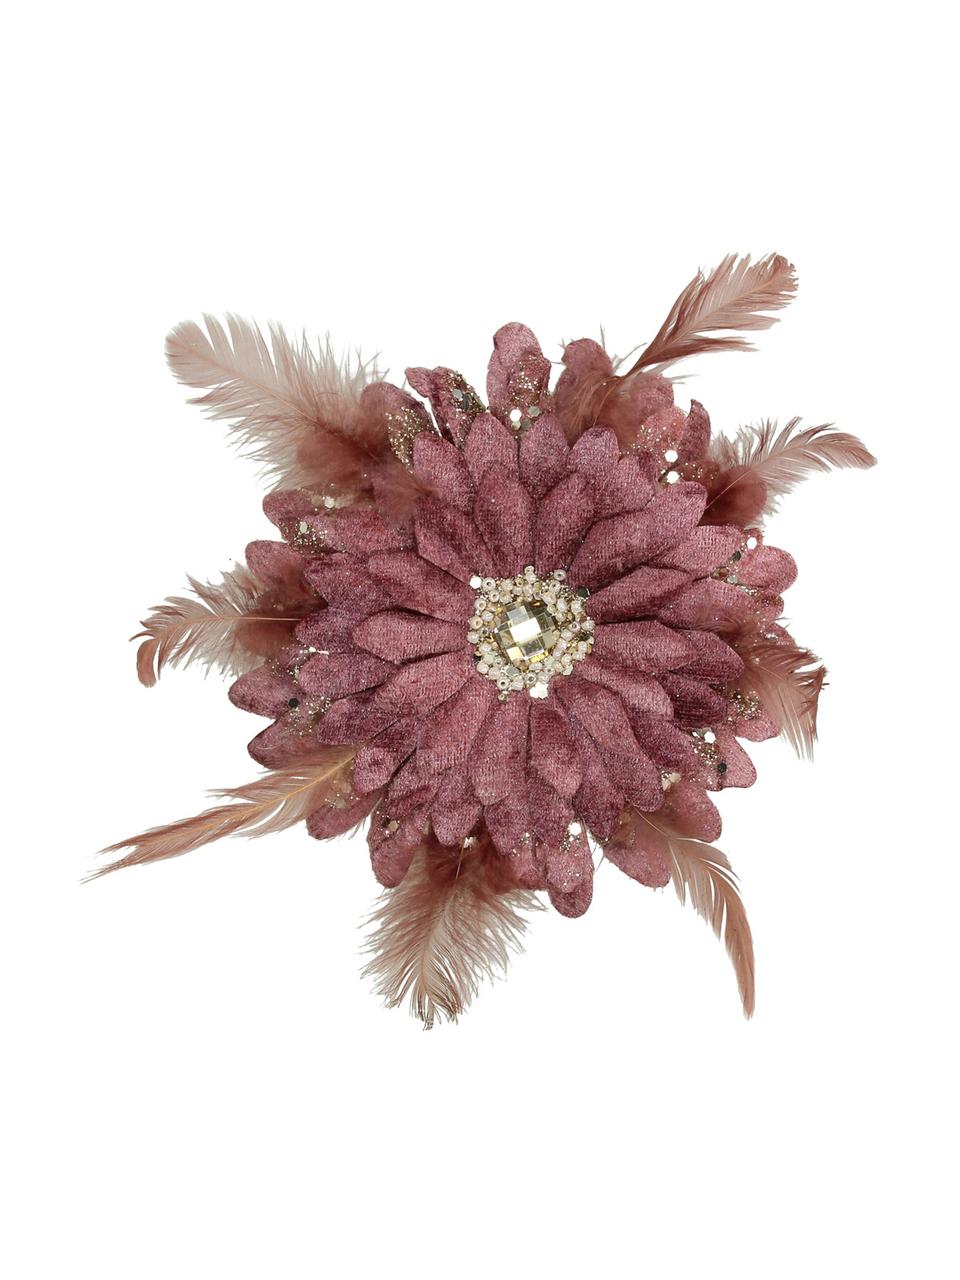 Ozdoba choinkowa Flower, Poliester, tworzywo sztuczne, Brudny różowy, odcienie złotego, Ø 20 cm